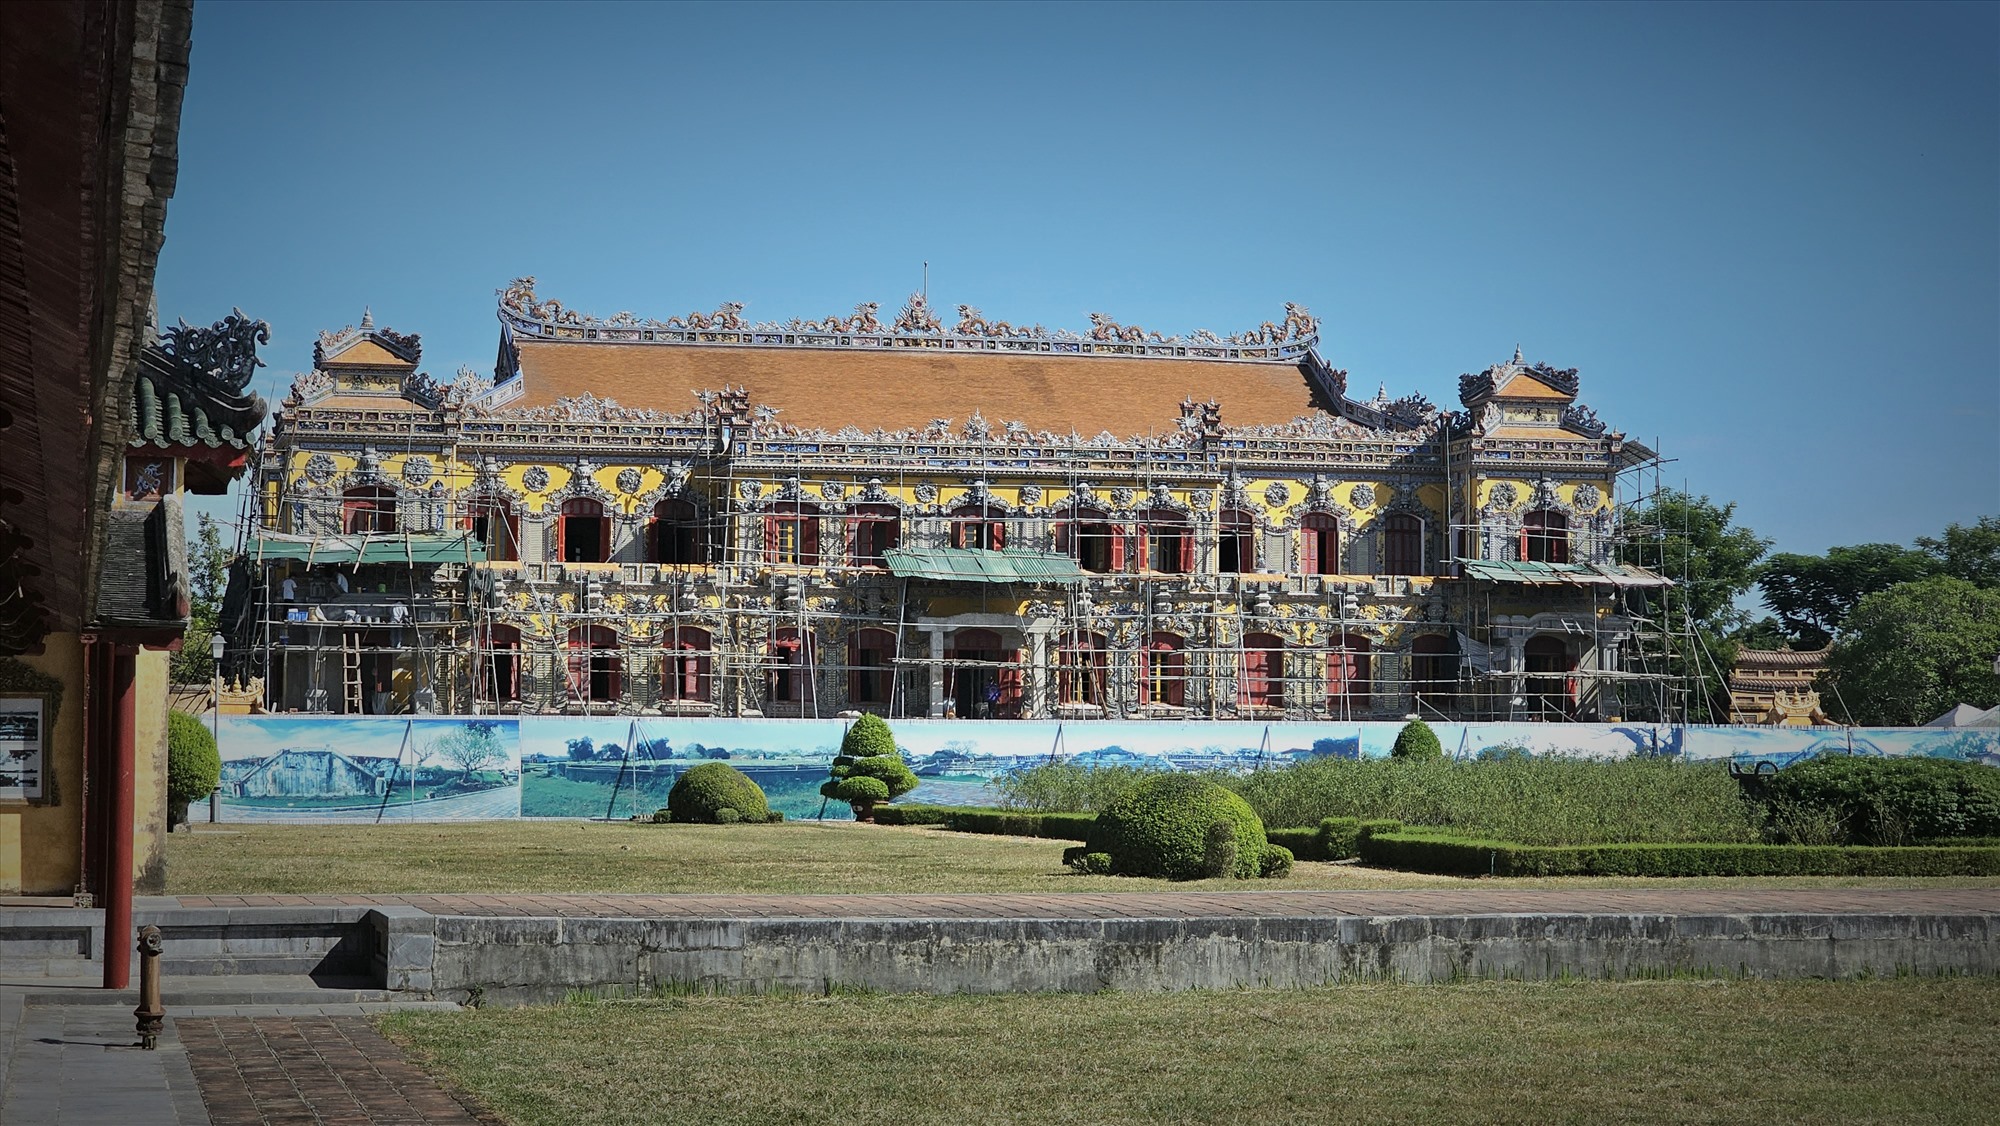 Tọa lạc trên trục thần đạo của Tử Cấm thành - Đại nội Huế, điện Kiến Trung là một trong 5 công trình tiêu biểu và quan trọng bên cạnh điện Thái Hòa, điện Cần Chánh, điện Càn Thành và cung Khôn Thái dưới thời nhà Nguyễn. 